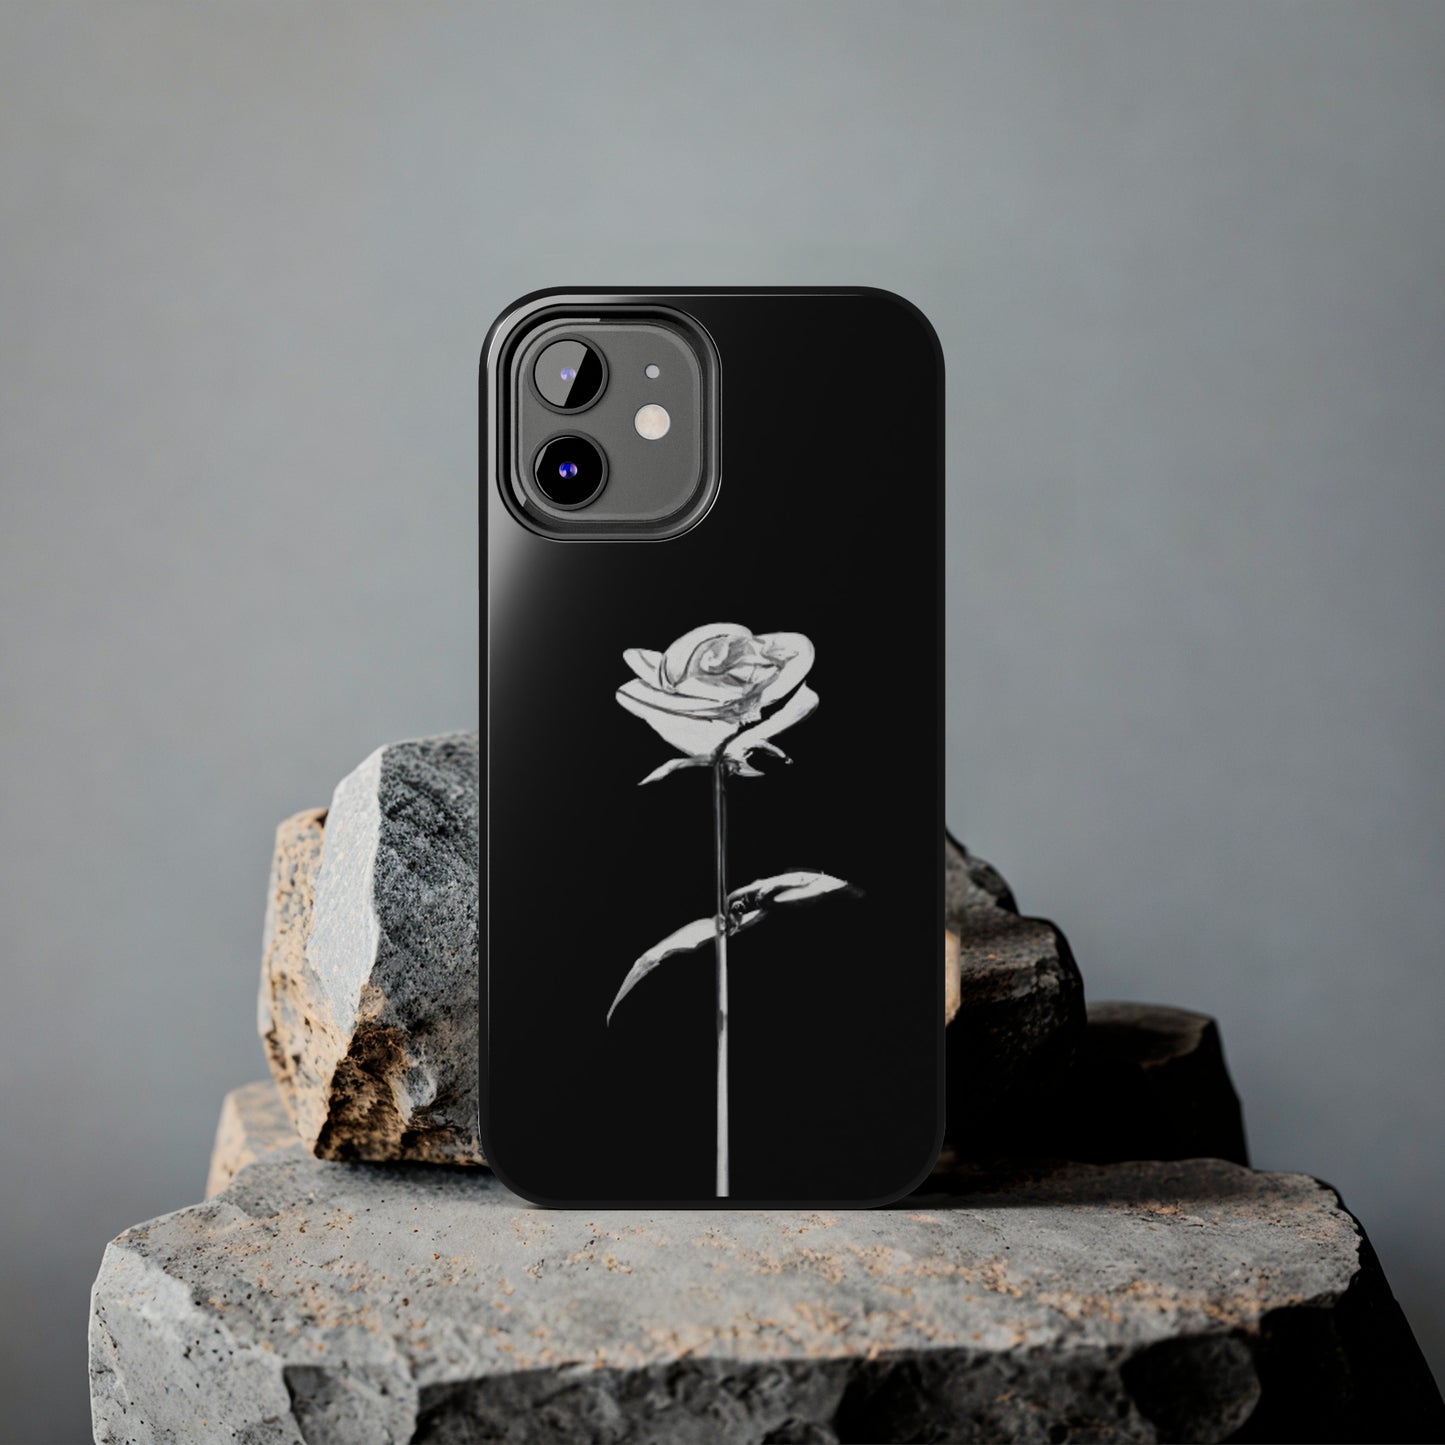 Classic iPhone Cases: White Rose